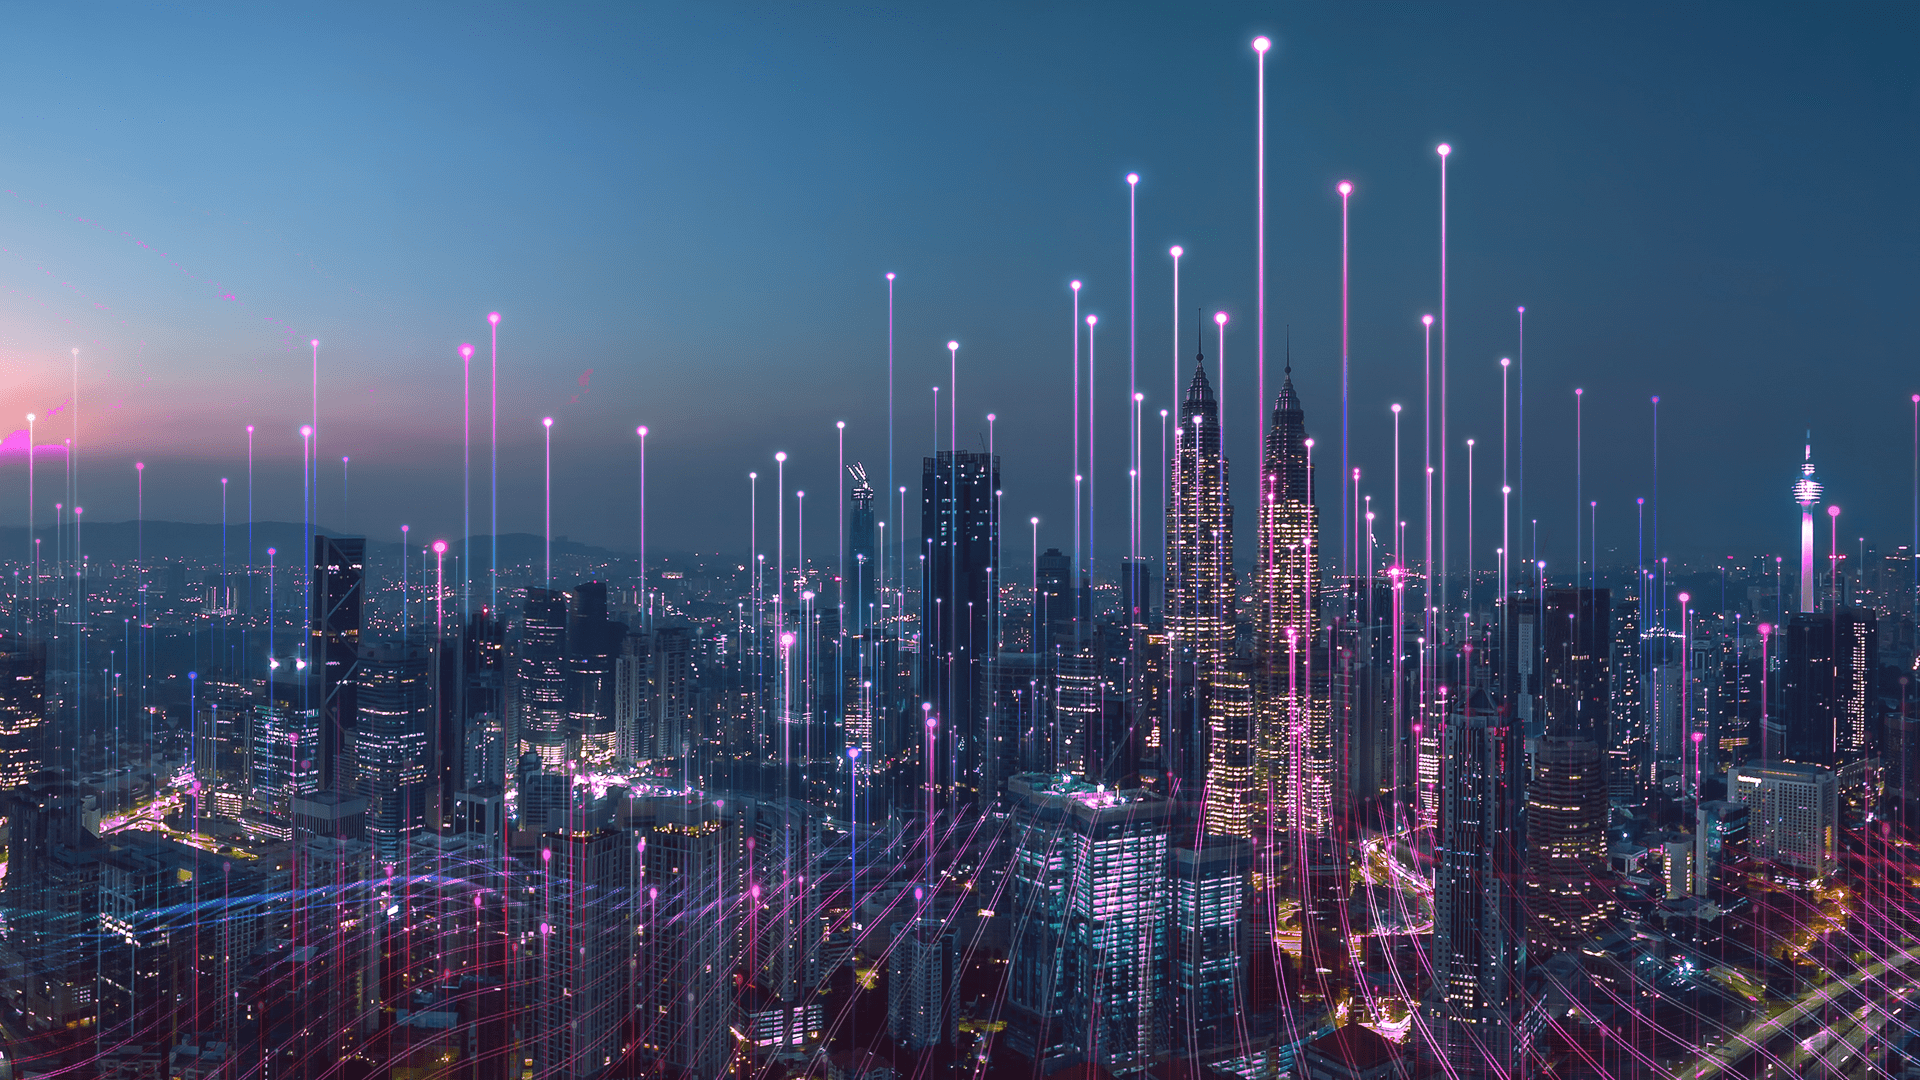 Ligne d’horizon d’une ville avec de grands bâtiments, des lumières et des lignes de néons roses se déplaçant vers le ciel.